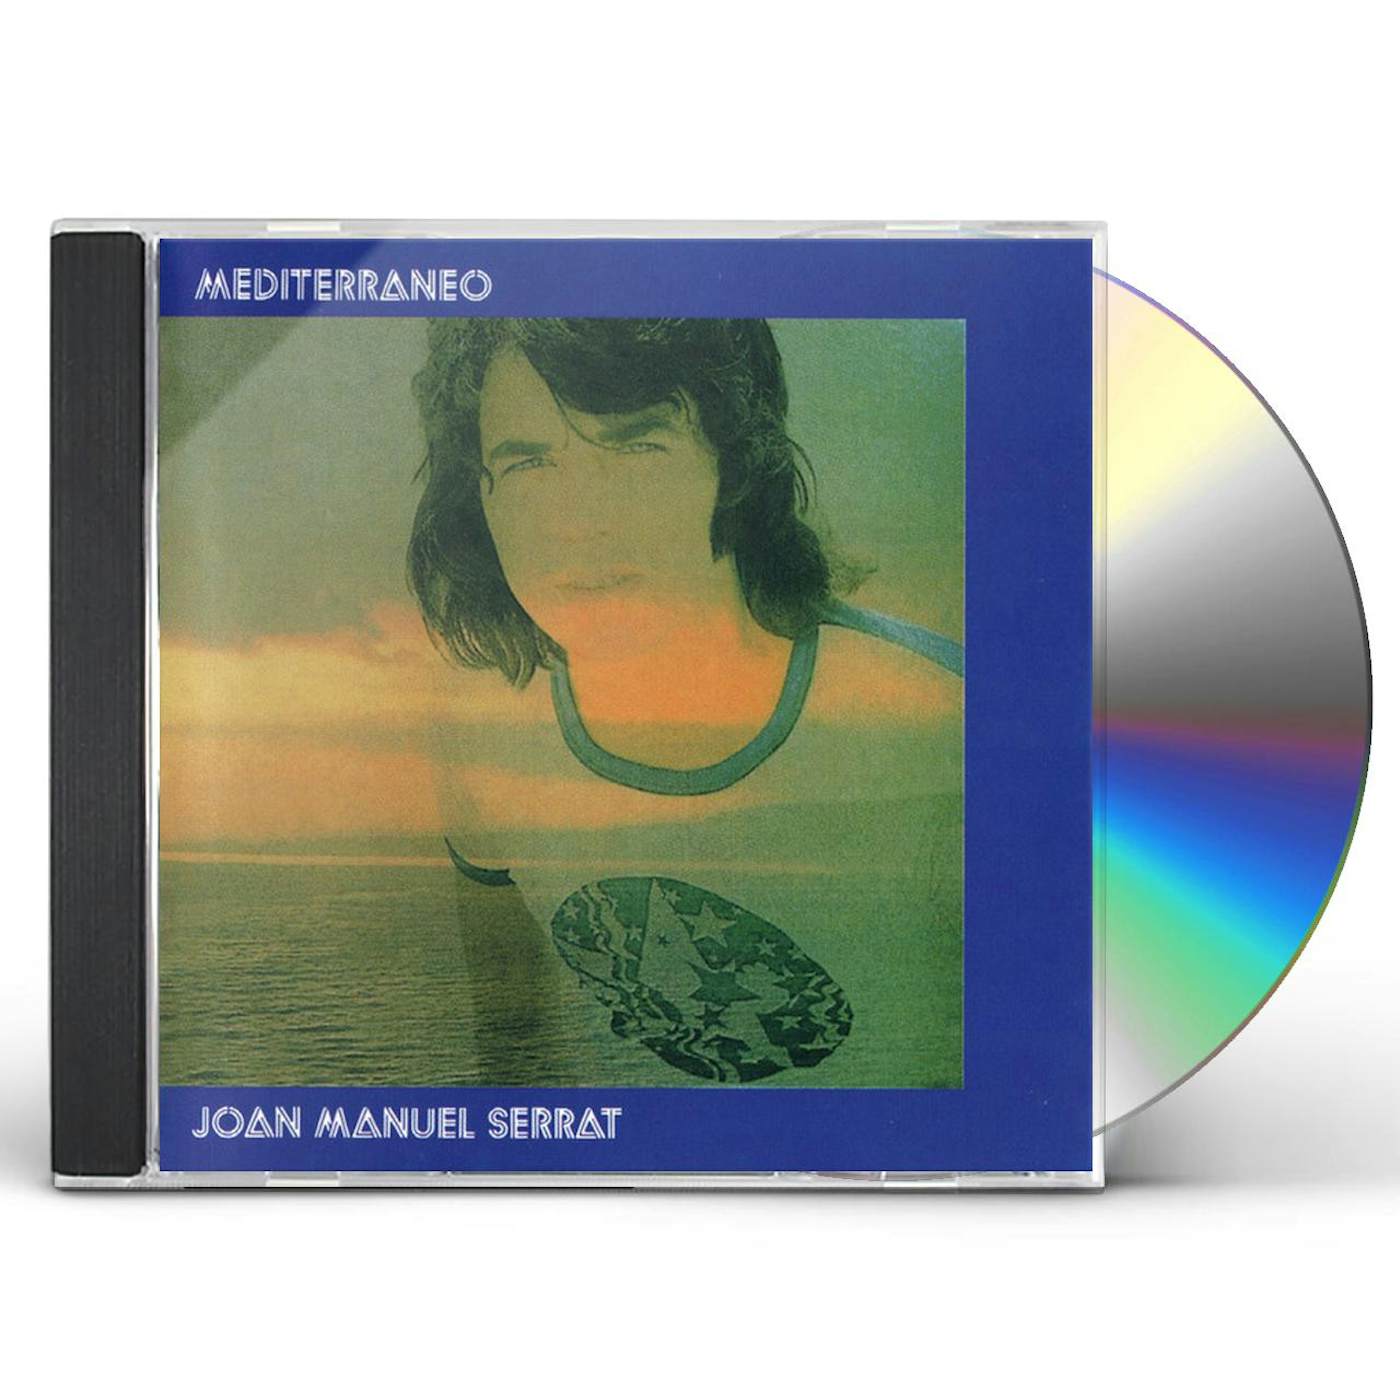 Joan Manuel Serrat MEDITERRANEO CD